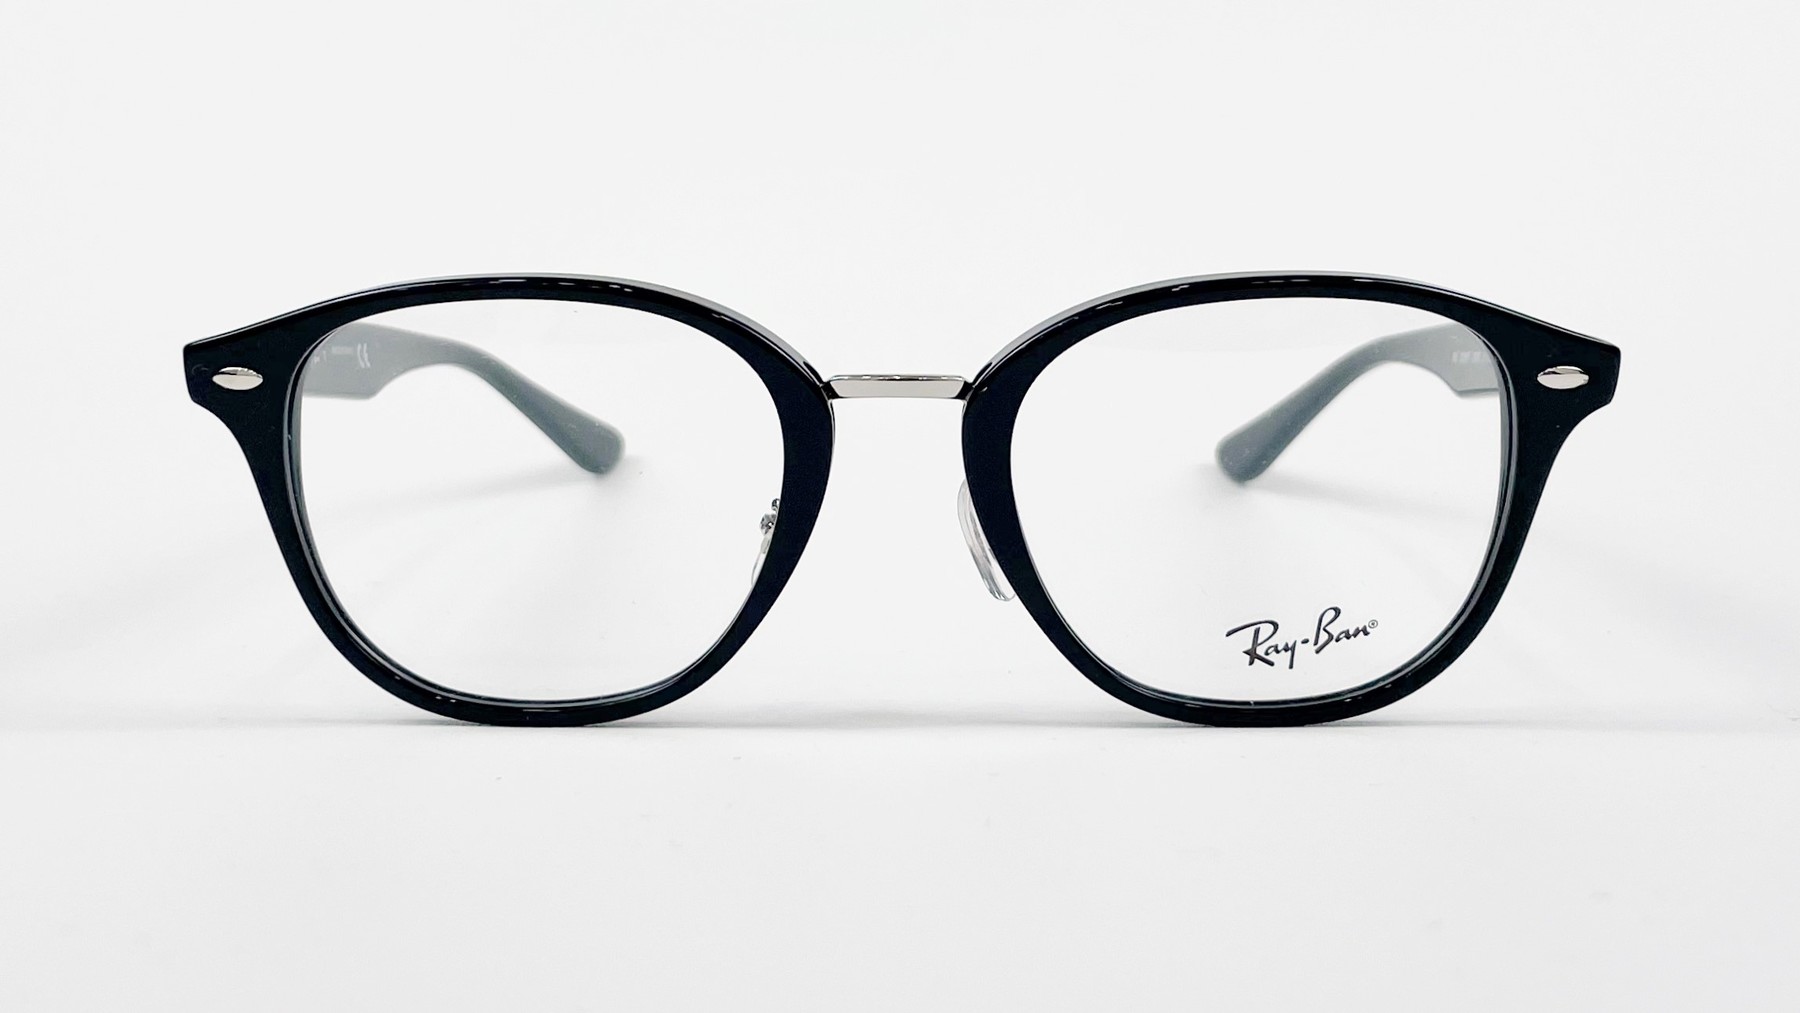 RayBan RB5355 2000, Korean glasses, sunglasses, eyeglasses, glasses